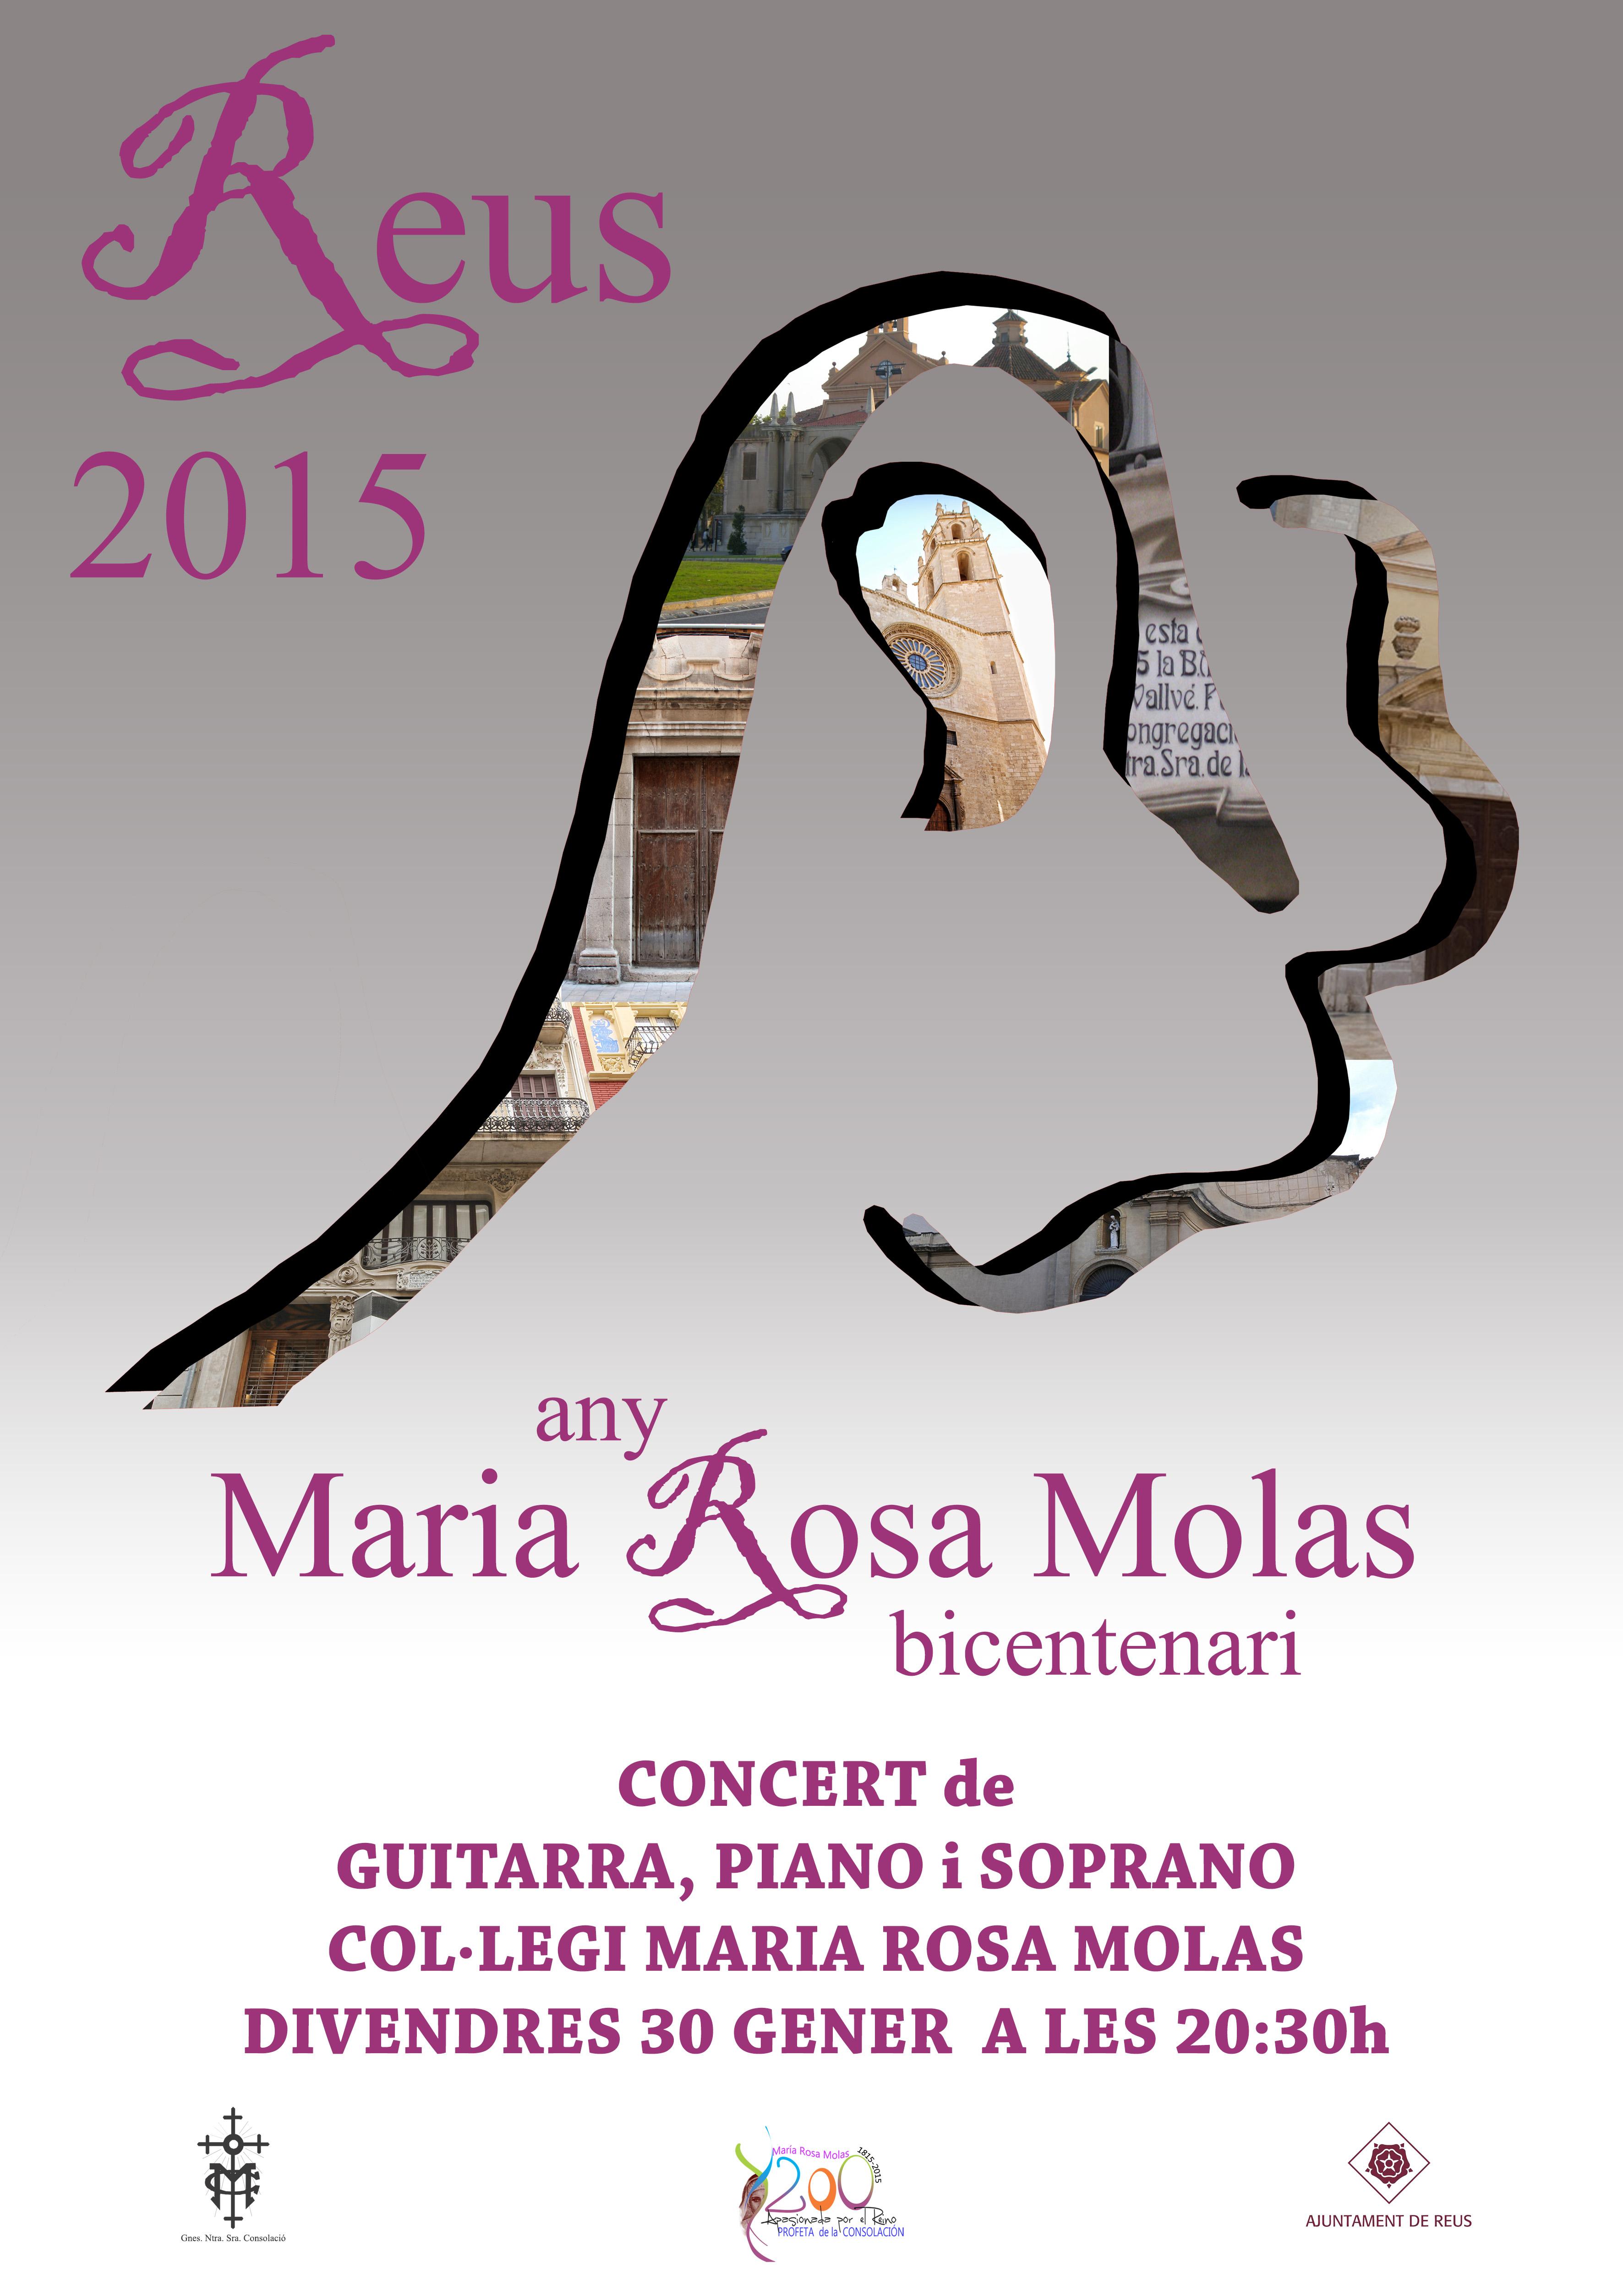 Any Maria Rosa Molas. Concert de guitarra, piano i soprano